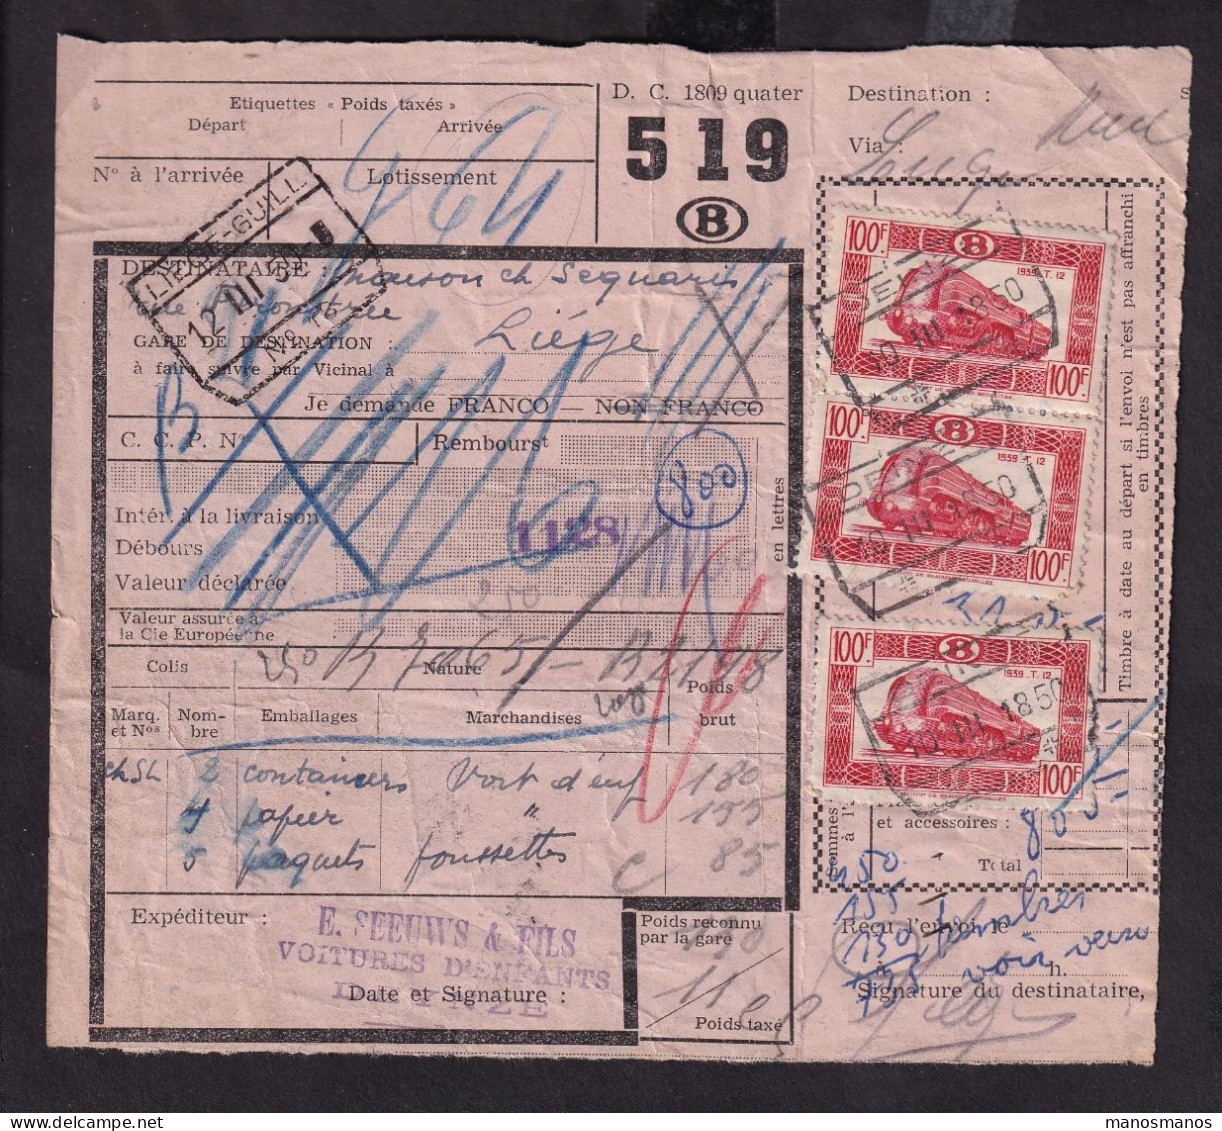 DDFF 165 - Timbres Chemin De Fer En MULTIPLES - 8 X 100 F - S/ Bulletin D'Expédition - DEINZE 1950 - Documentos & Fragmentos